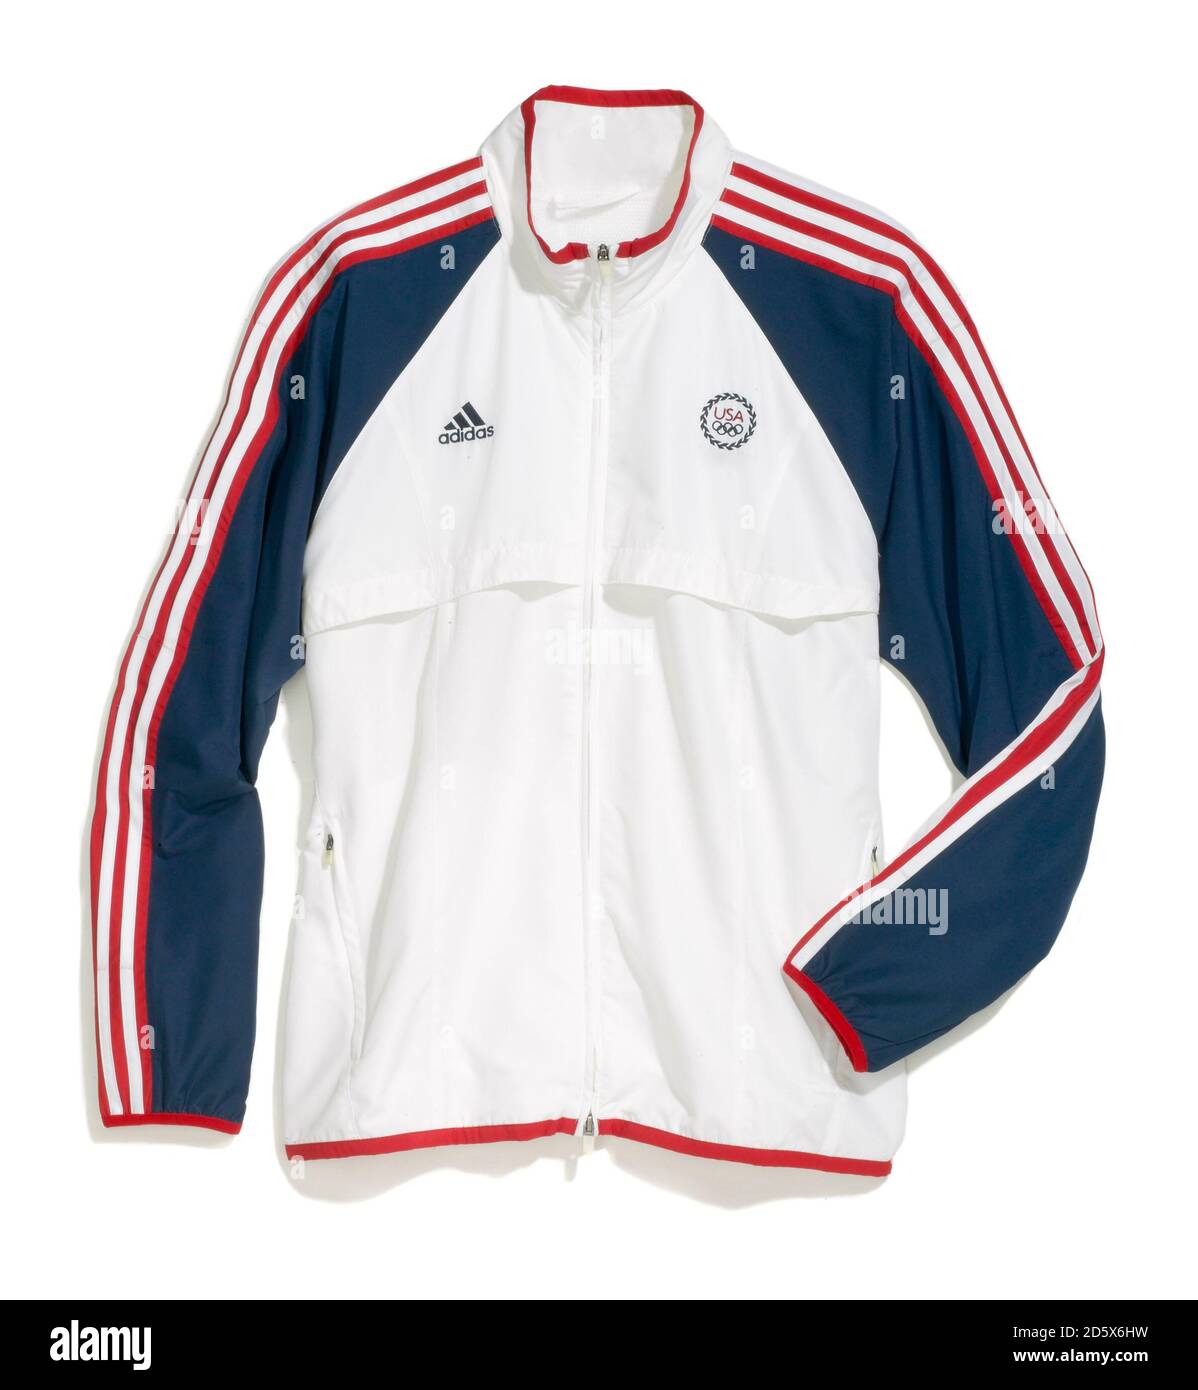 Rot, weiß und blau wasserfeste Olympic Zip Up Jacke von Adidas auf weißem Hintergrund fotografiert Stockfoto